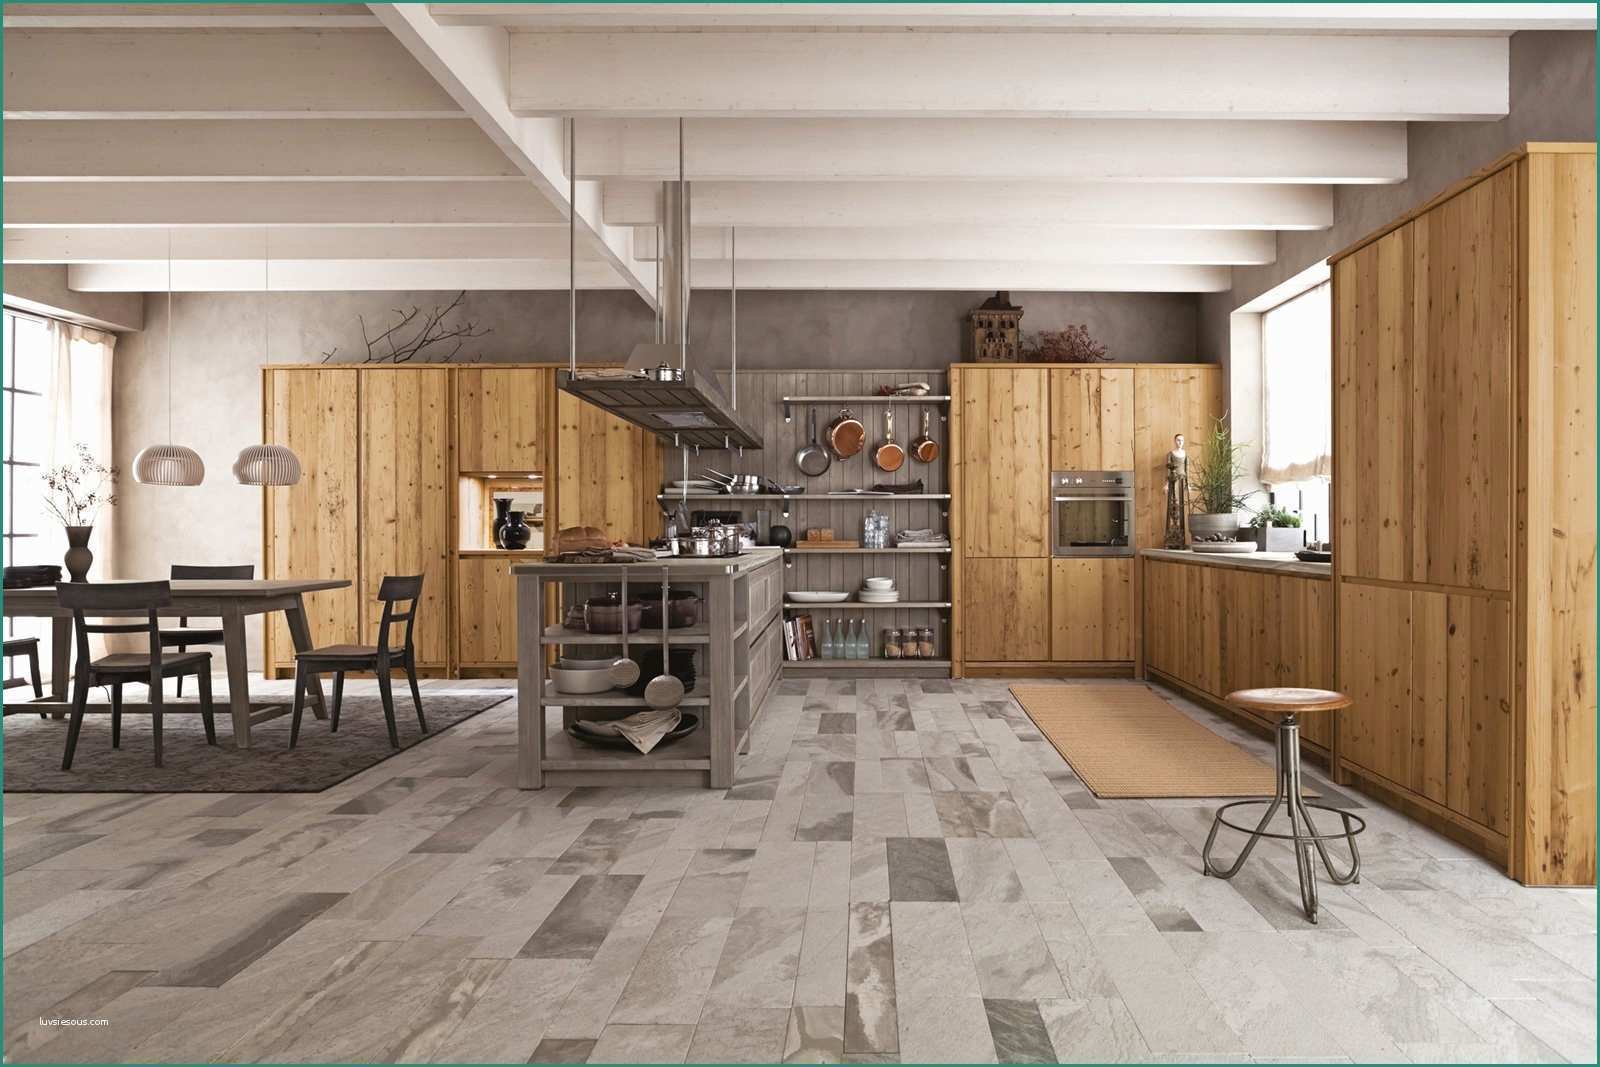 Arredamento Rustico E Moderno Insieme E Cucine A Vista Per Il Loft Nel soggiorno Open Space